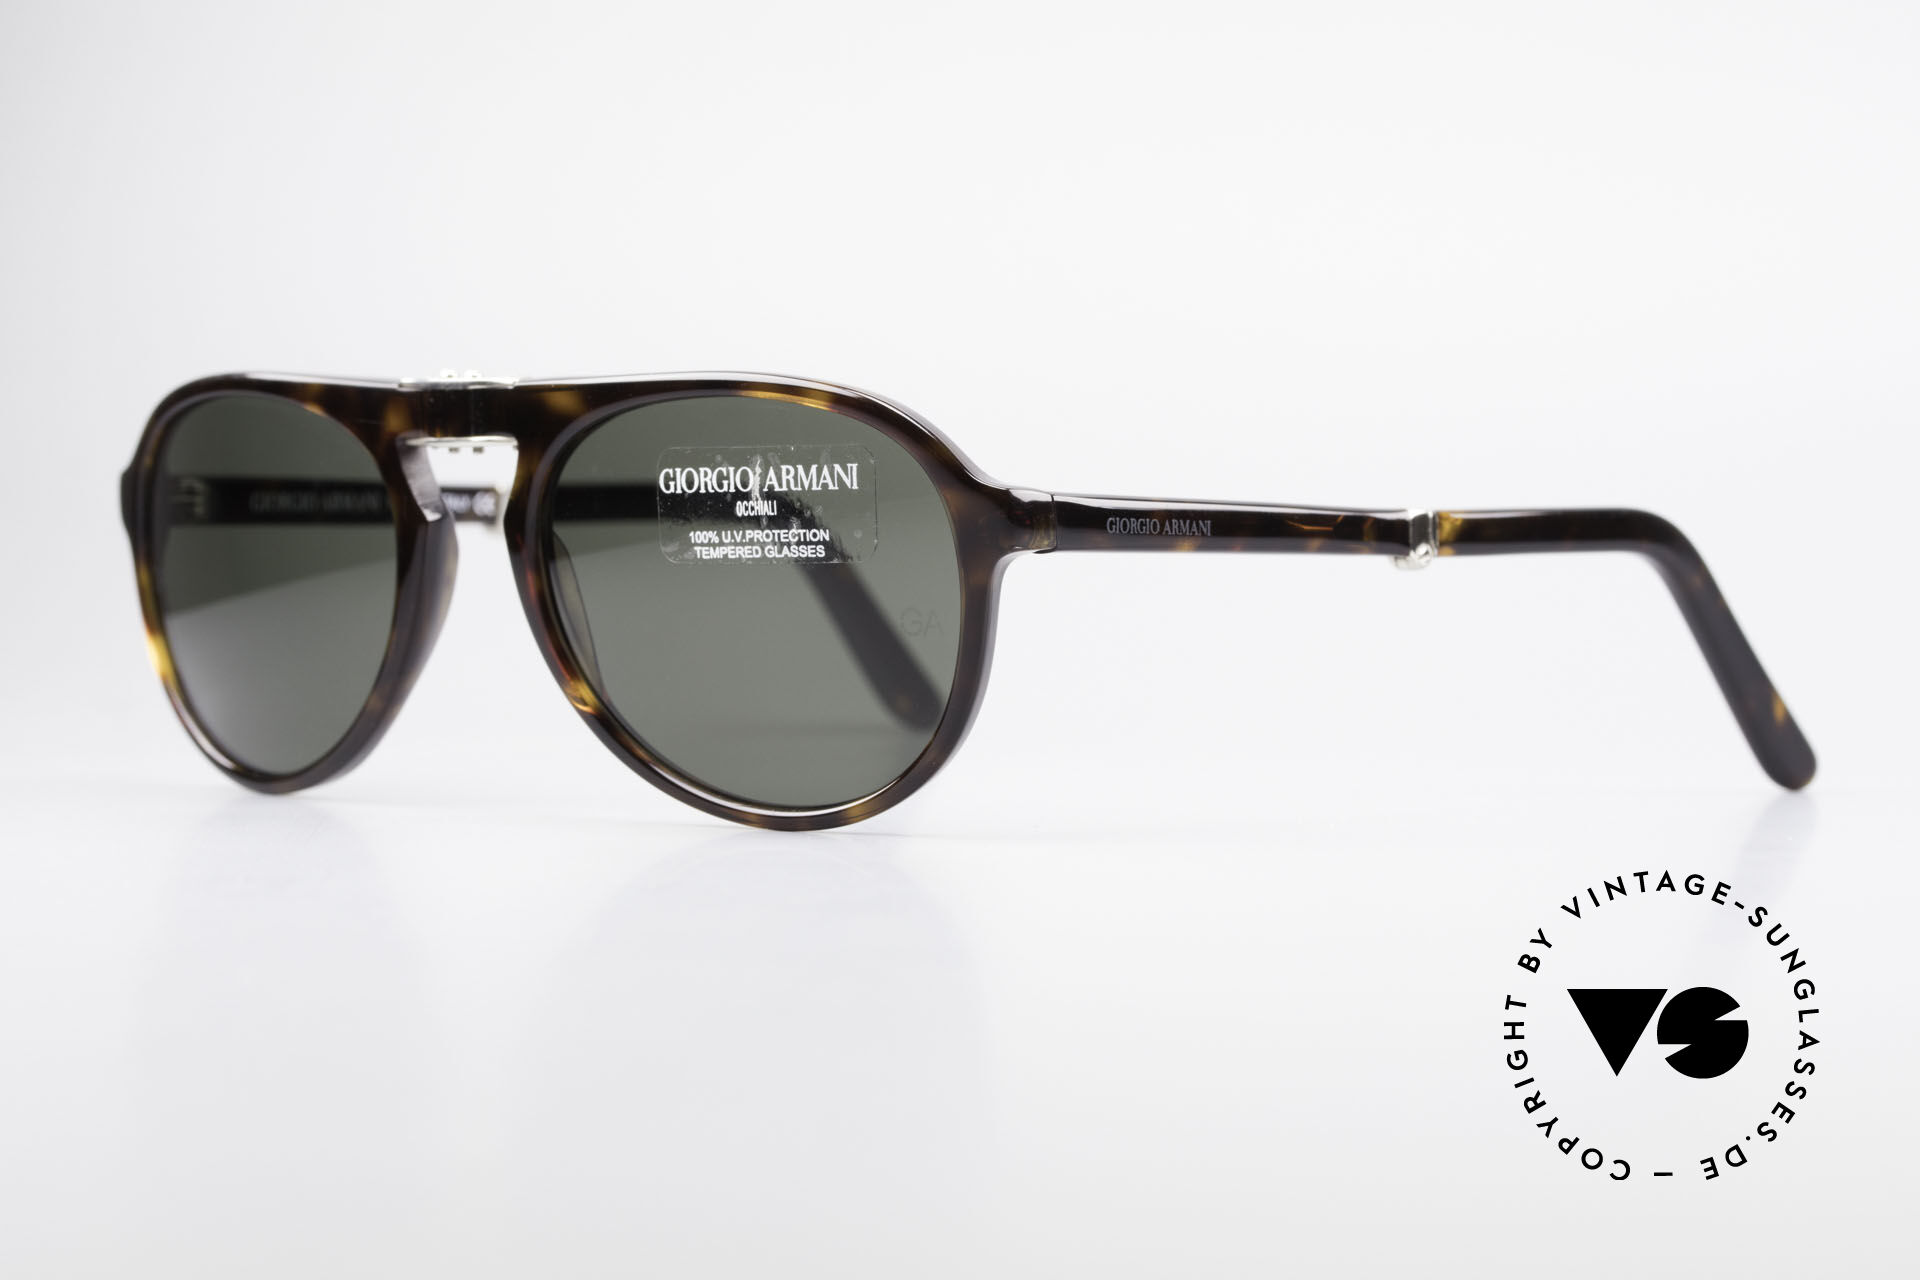 Sunglasses Giorgio Armani 2522 Folding Aviator Sunglasses